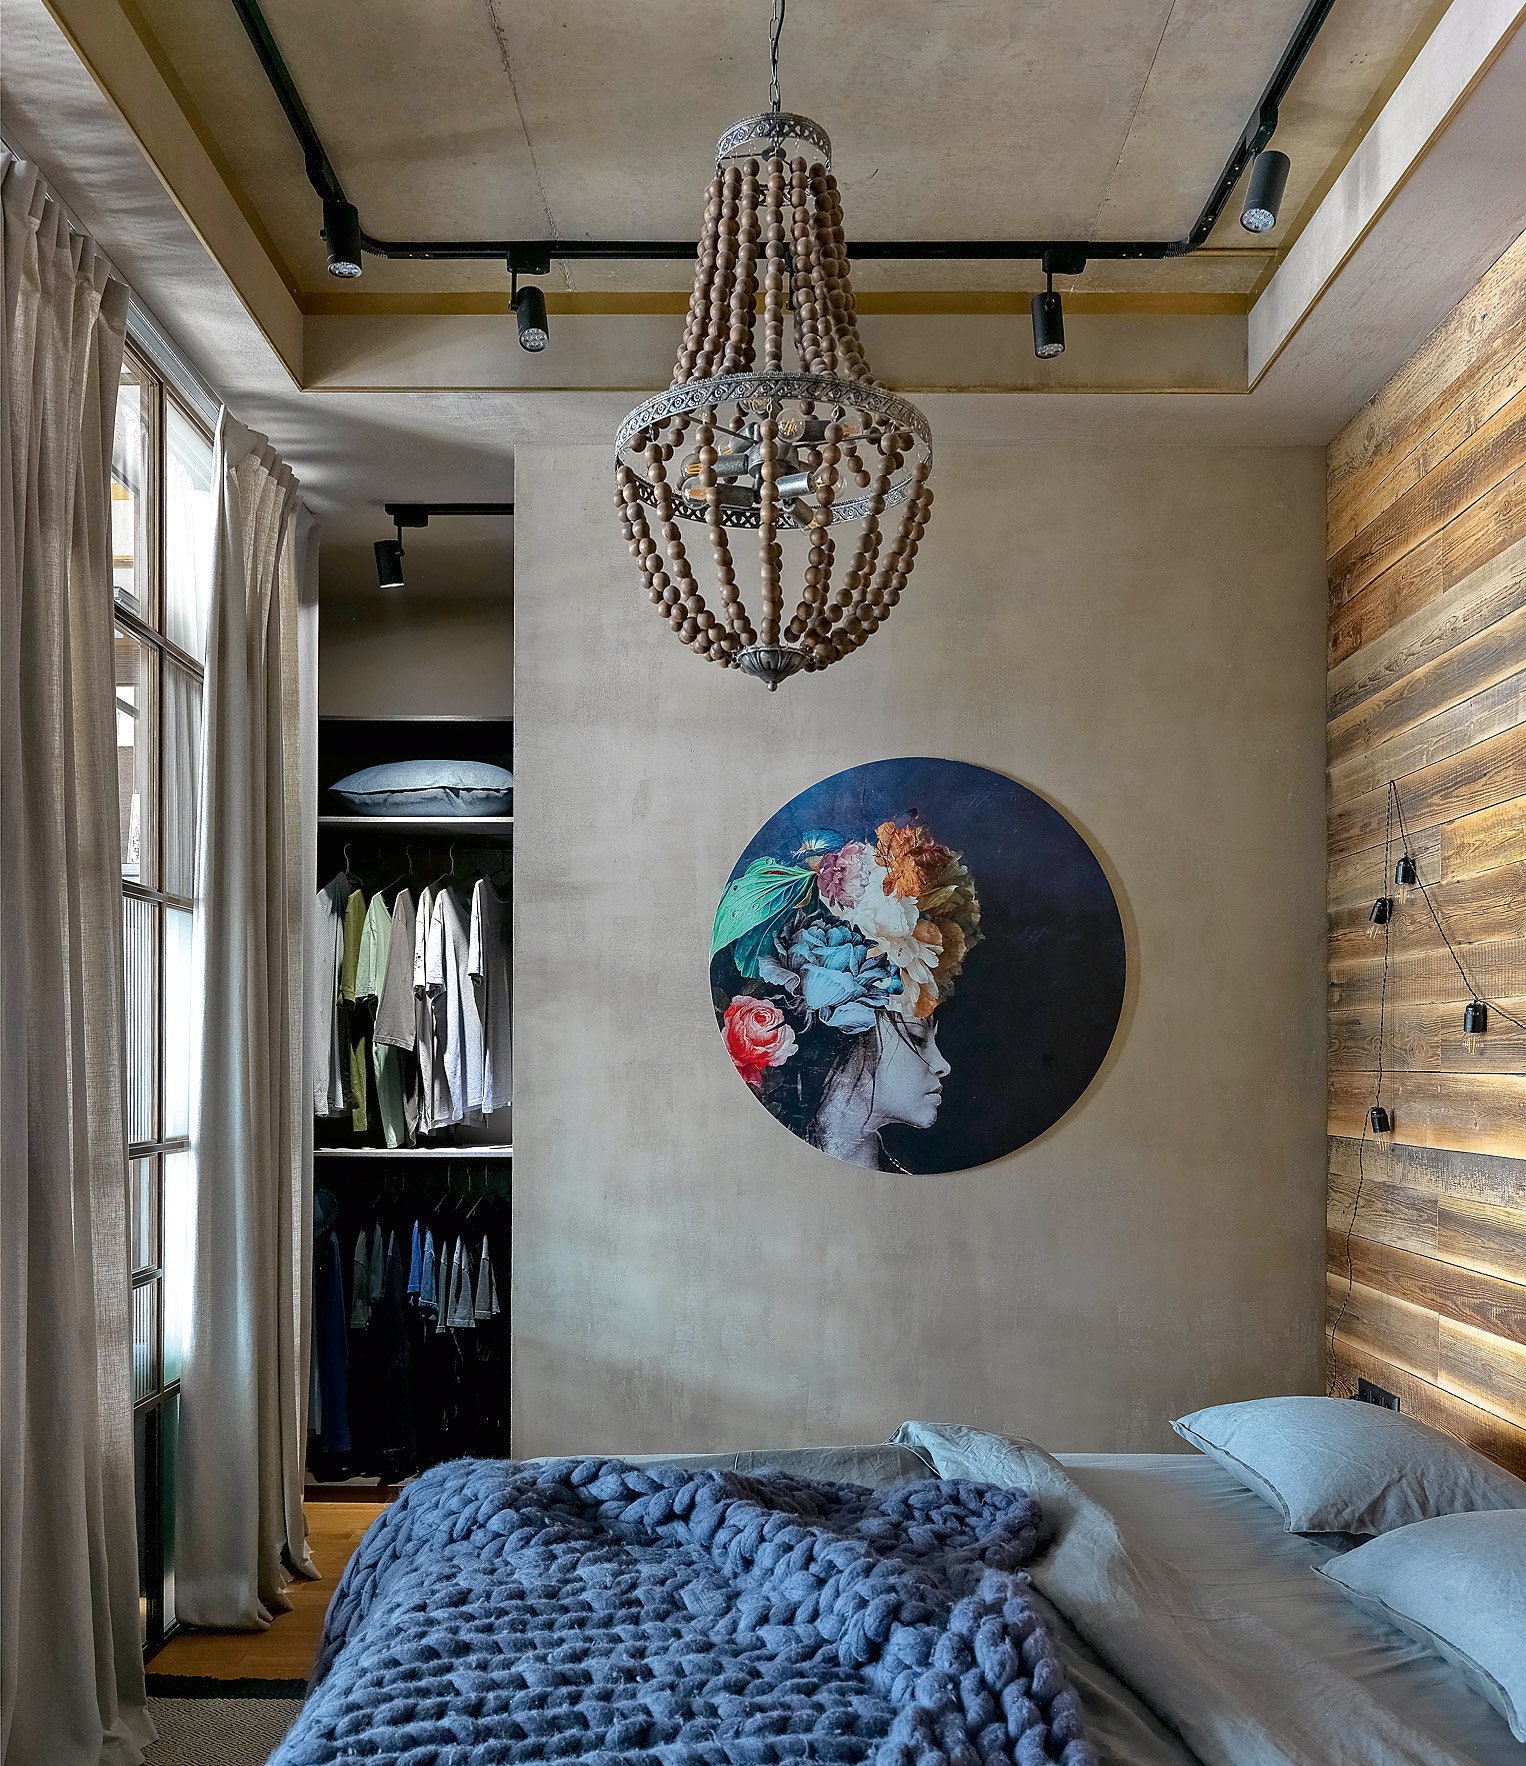 Стена спальни покрыта декоративным бетоном интерь­ерное ателье Umago. На кровати плед Woolie.